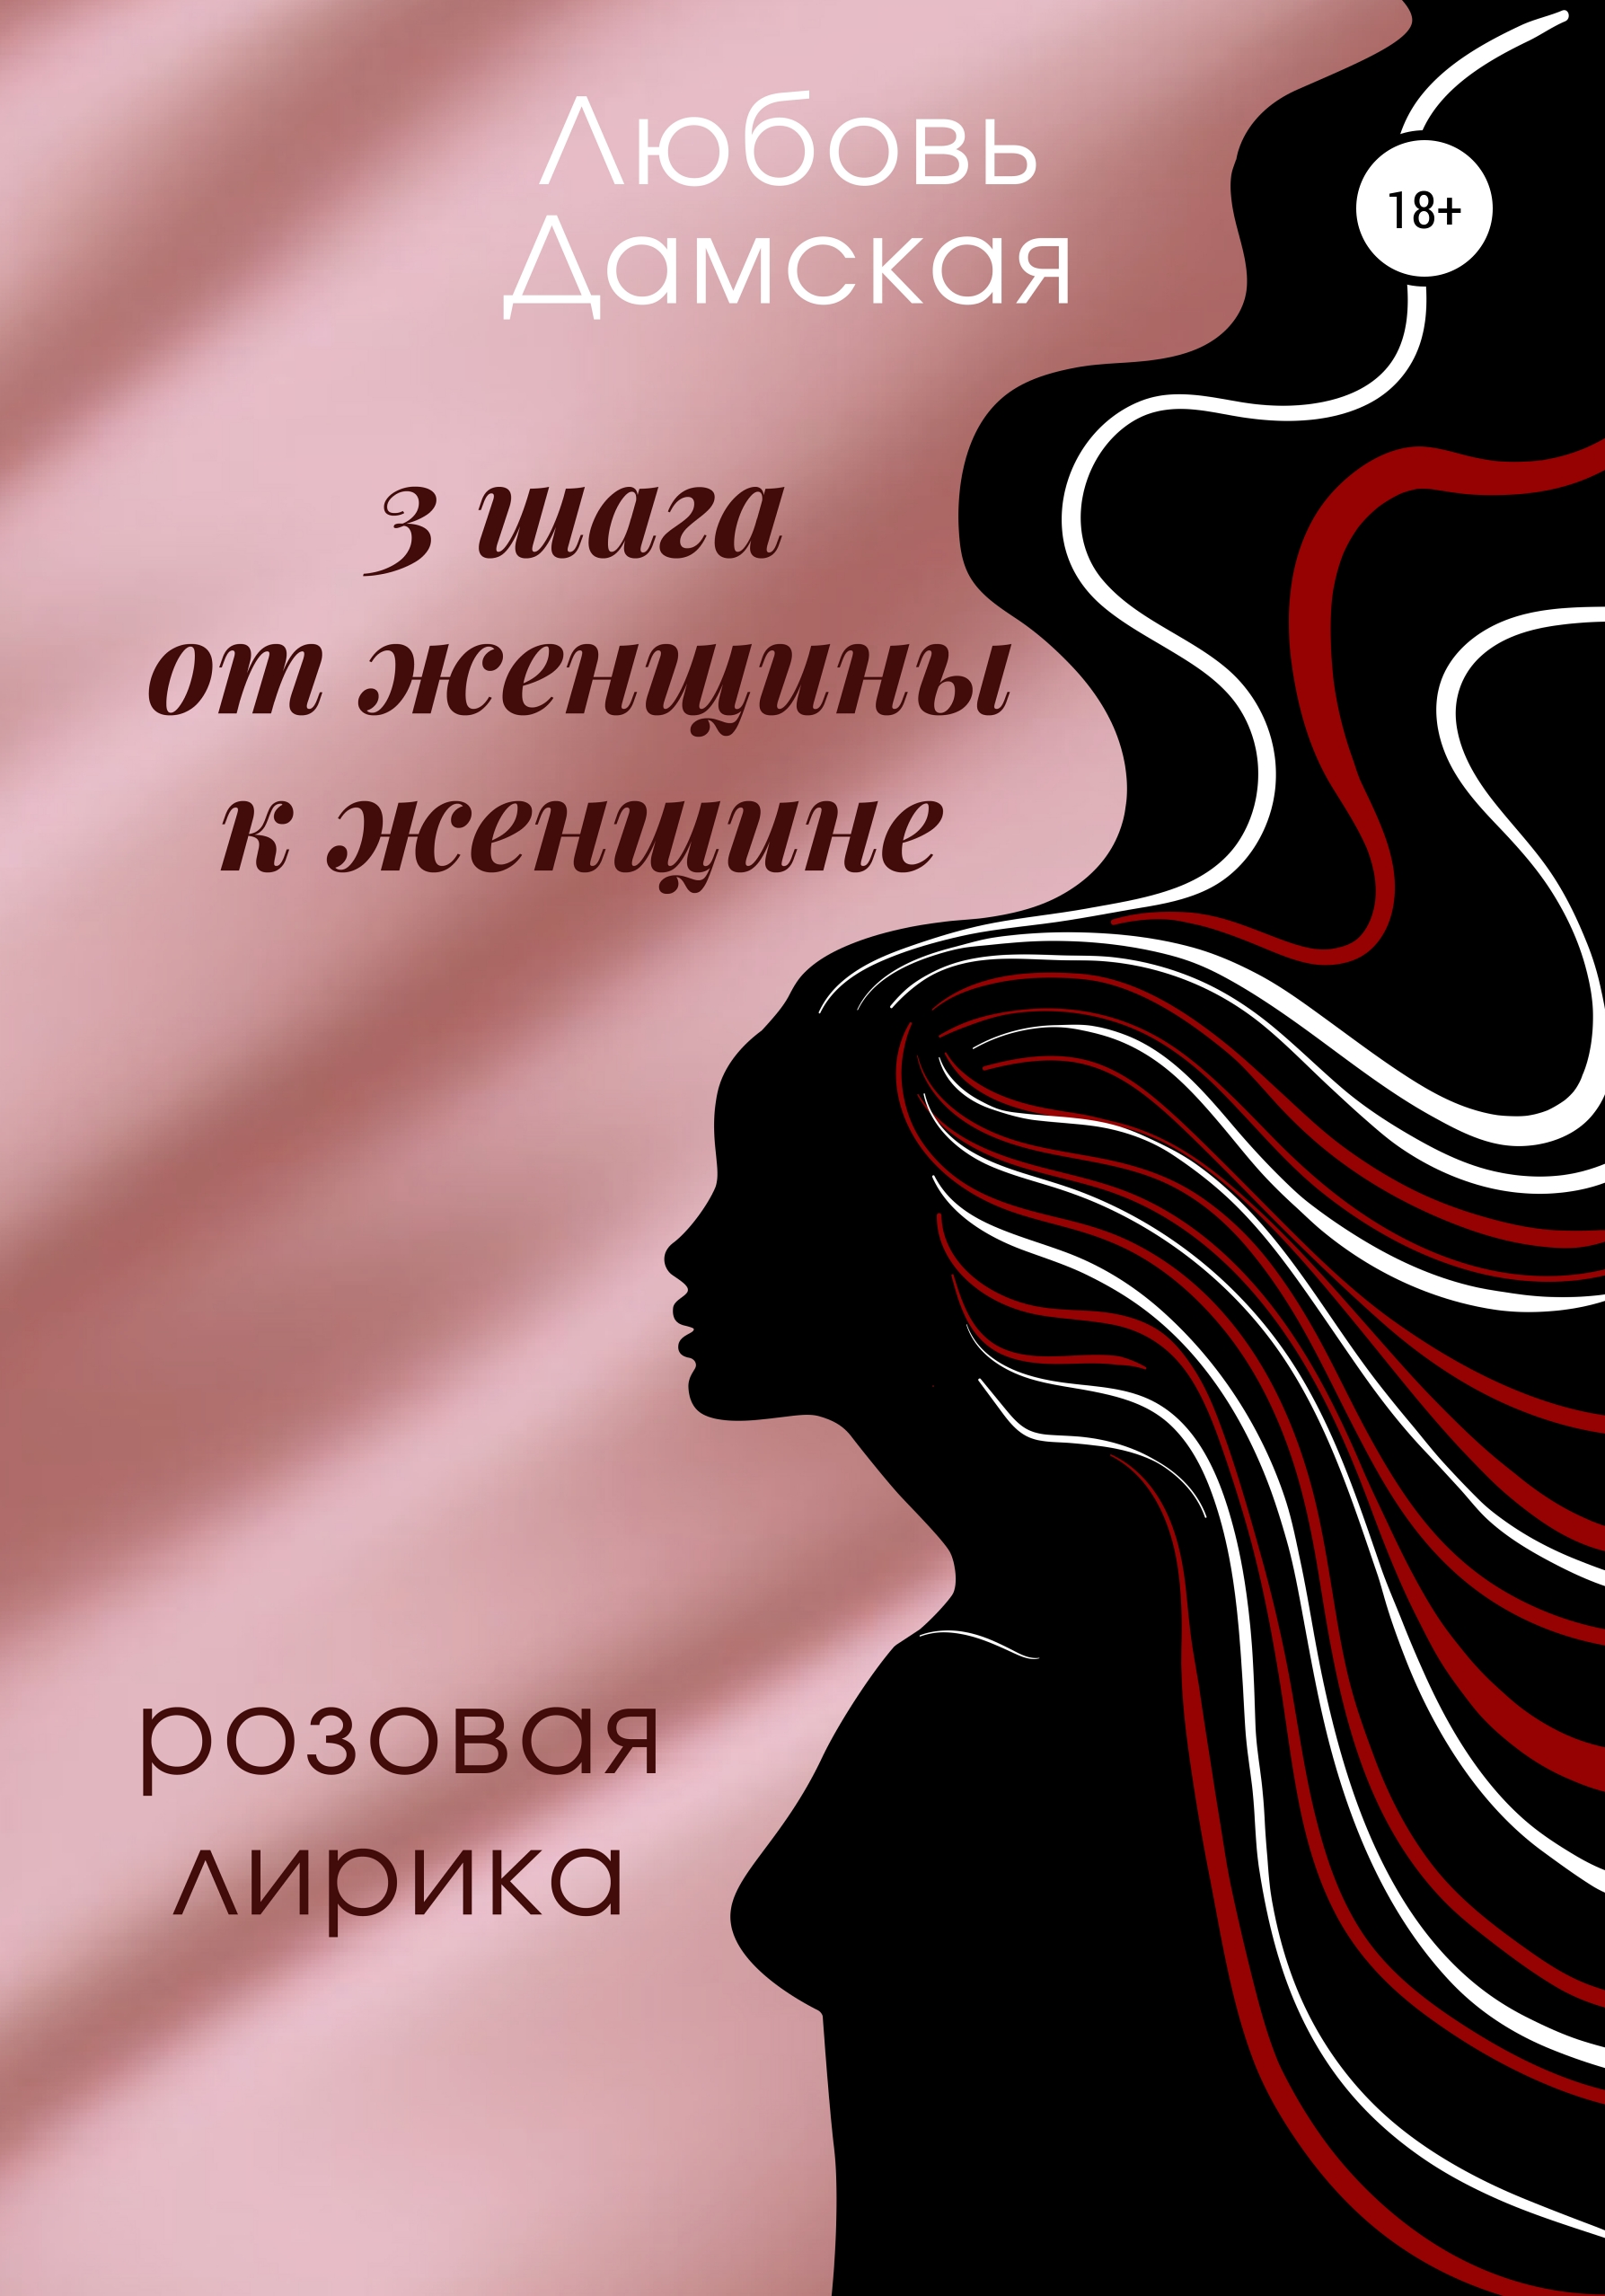 3 шага от женщины к женщине